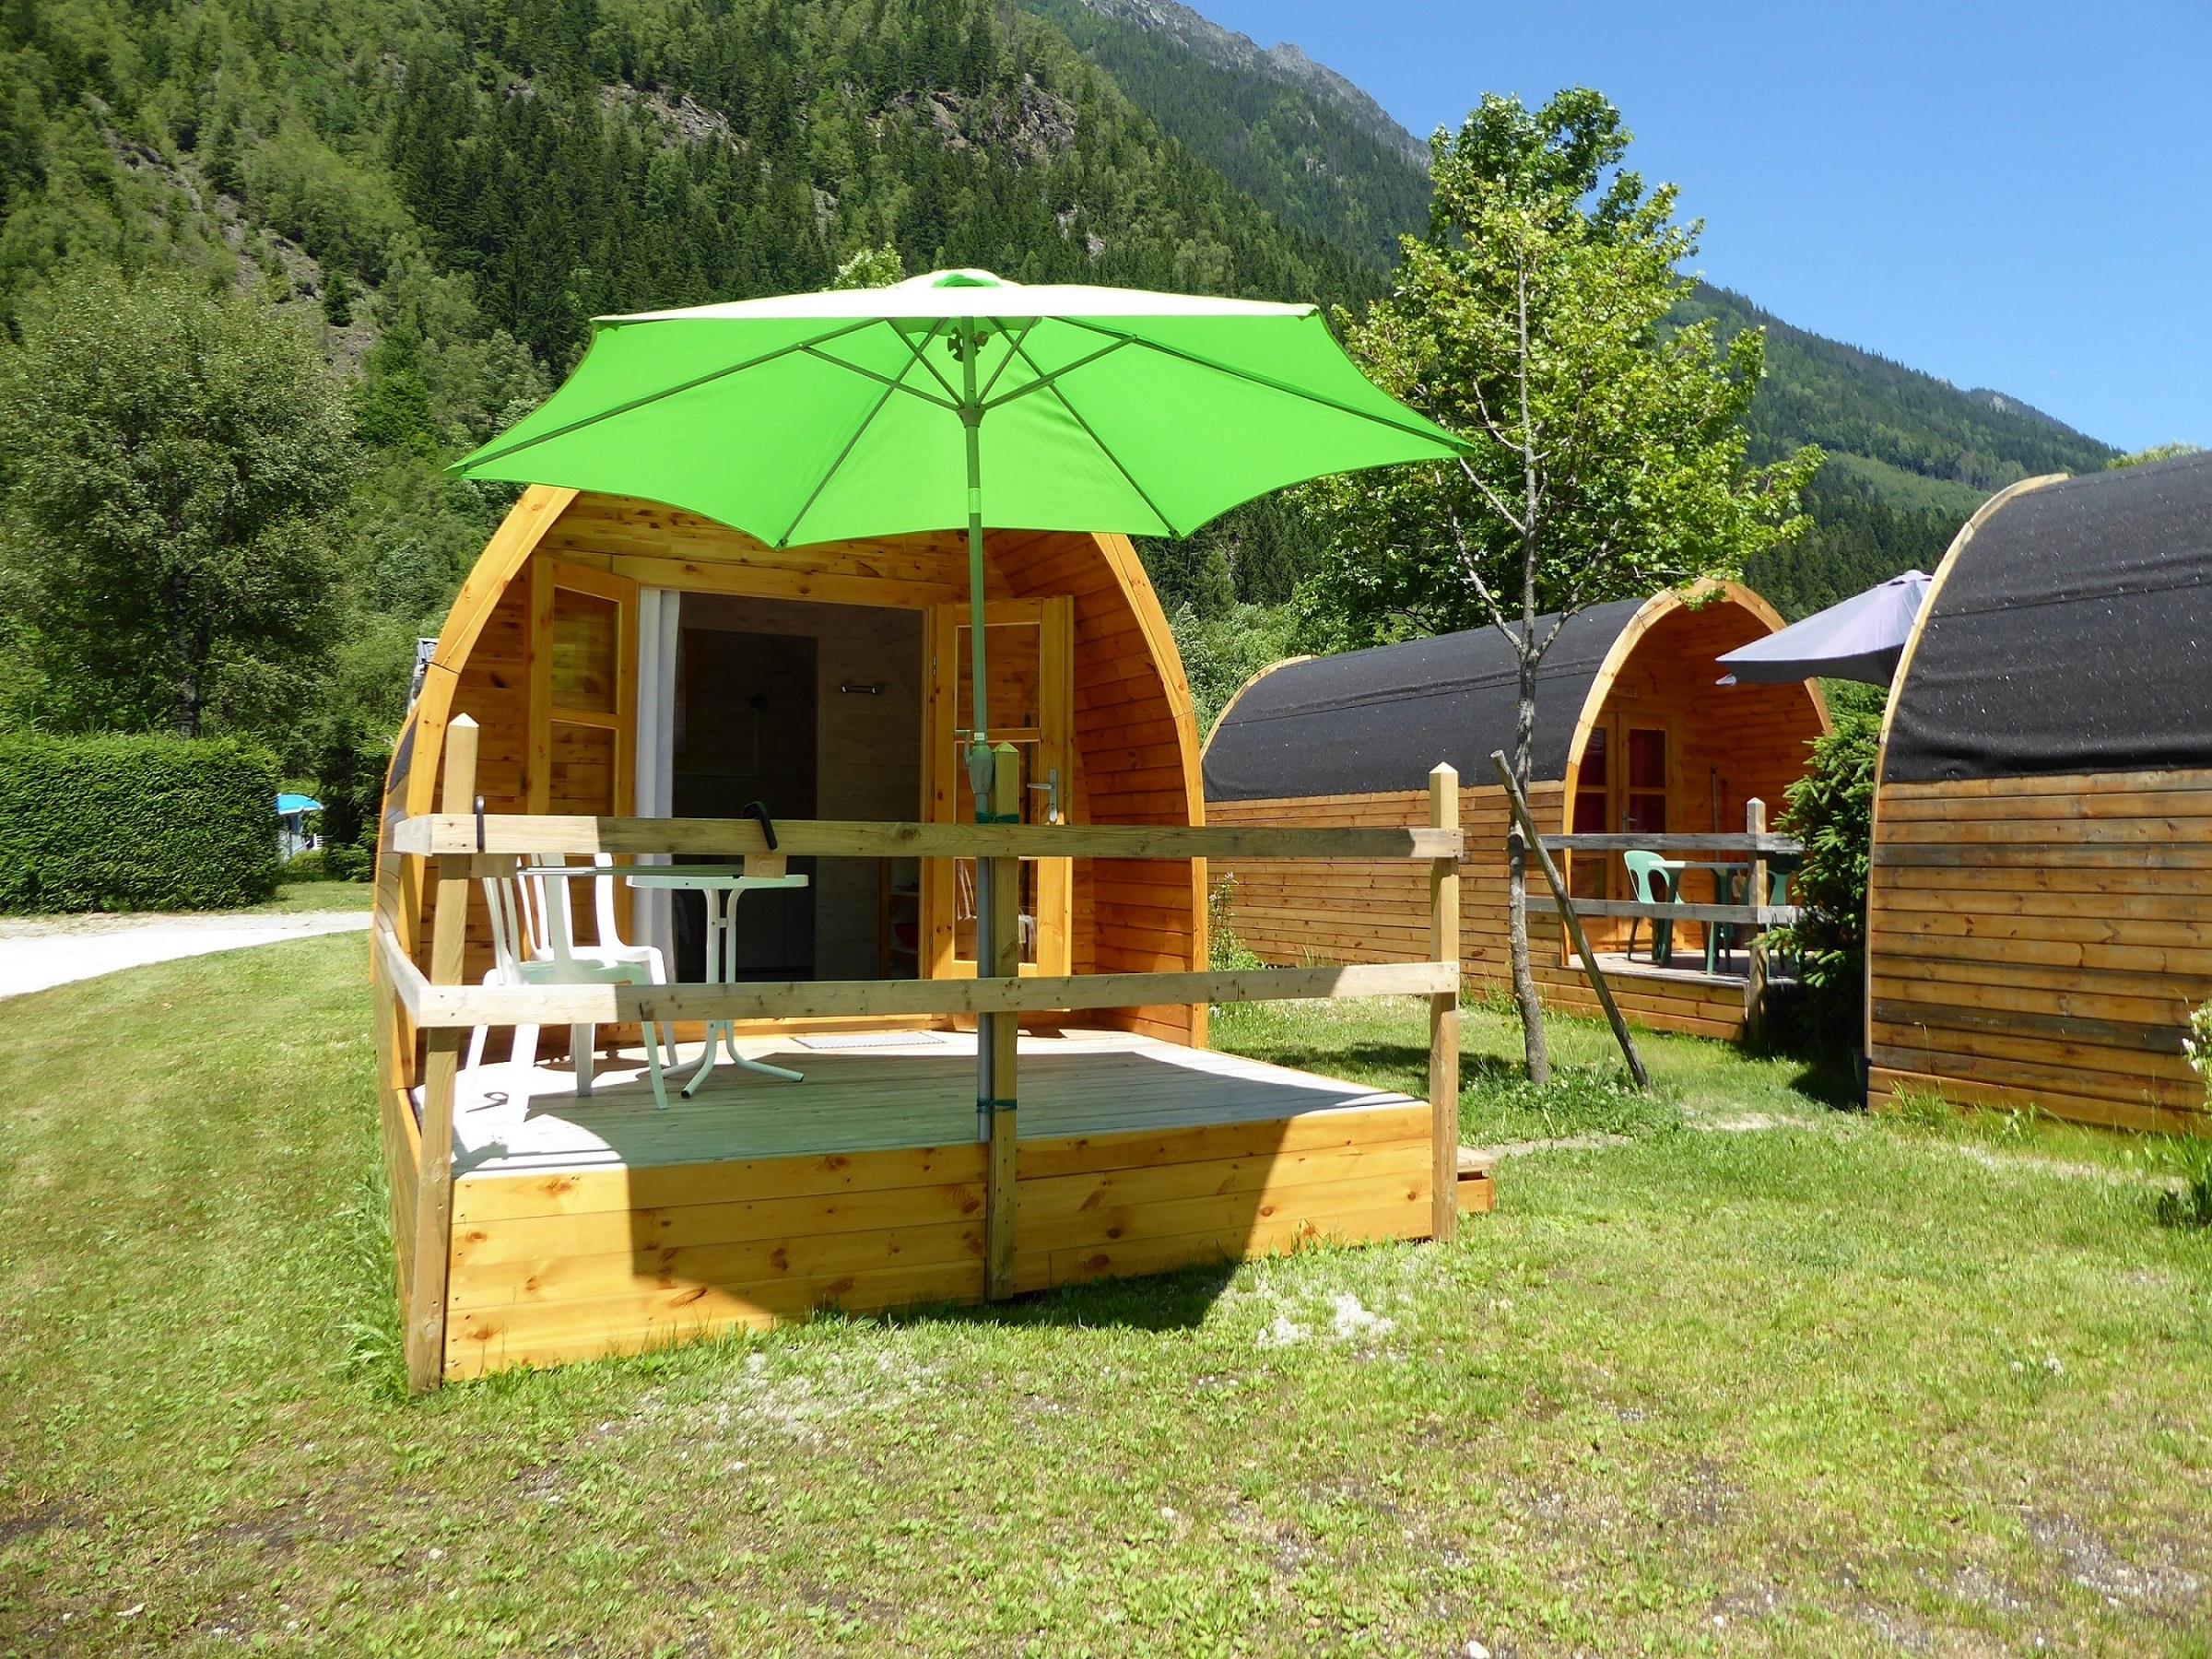 Huuraccommodatie - Pod Tétras 12M² / Aankomst En Alloceert Zaterdag In De Maanden Juli En Augustus. - Camping Les Marmottes